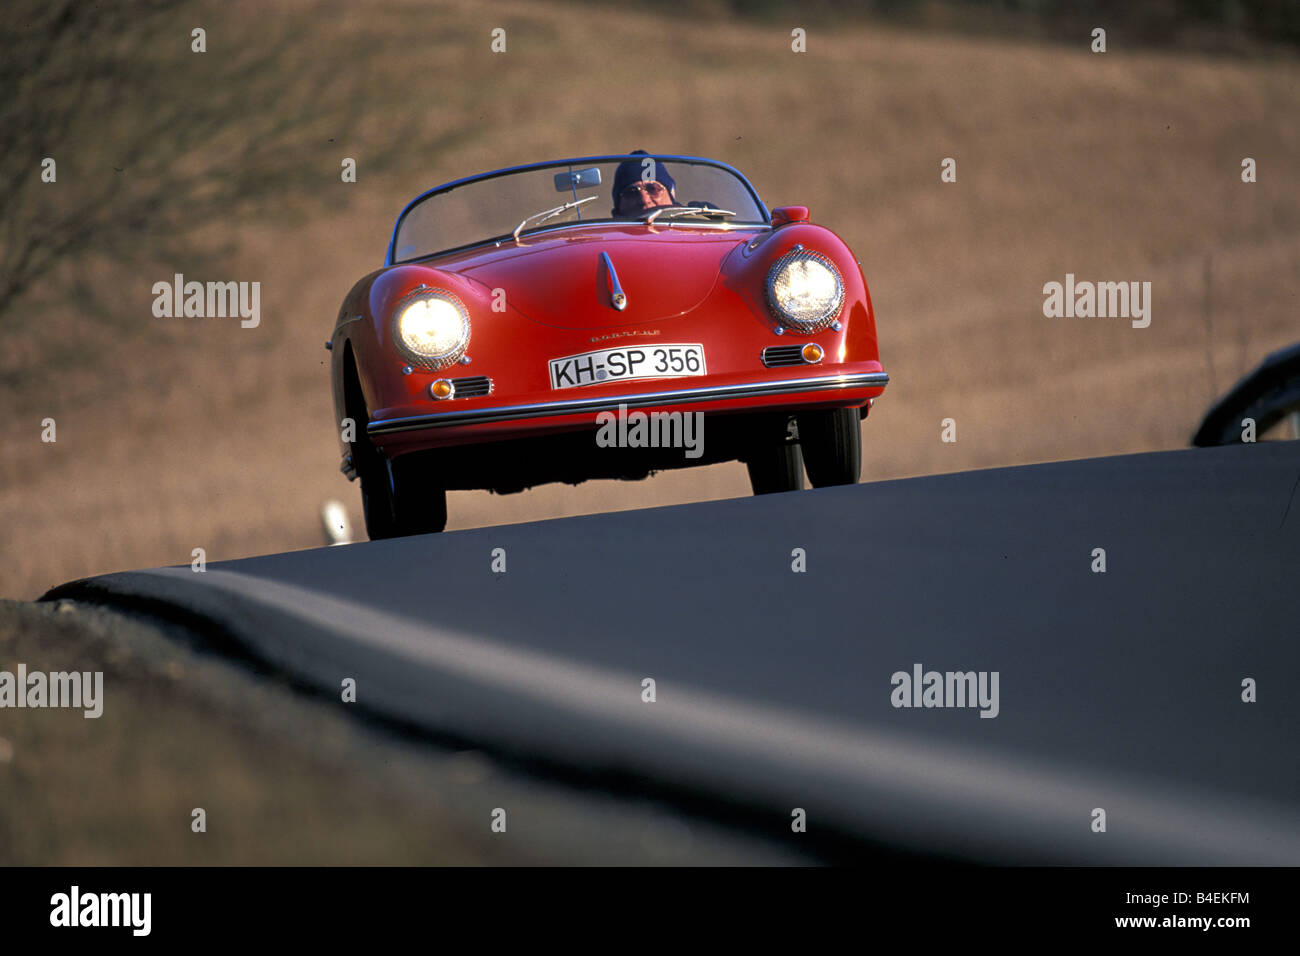 Auto, Porsche 356 Carrera una Speedster, anno modello 1955-1958, cabriolet, rosso, capote aperta, auto d'epoca, anni cinquanta anni cinquanta Foto Stock